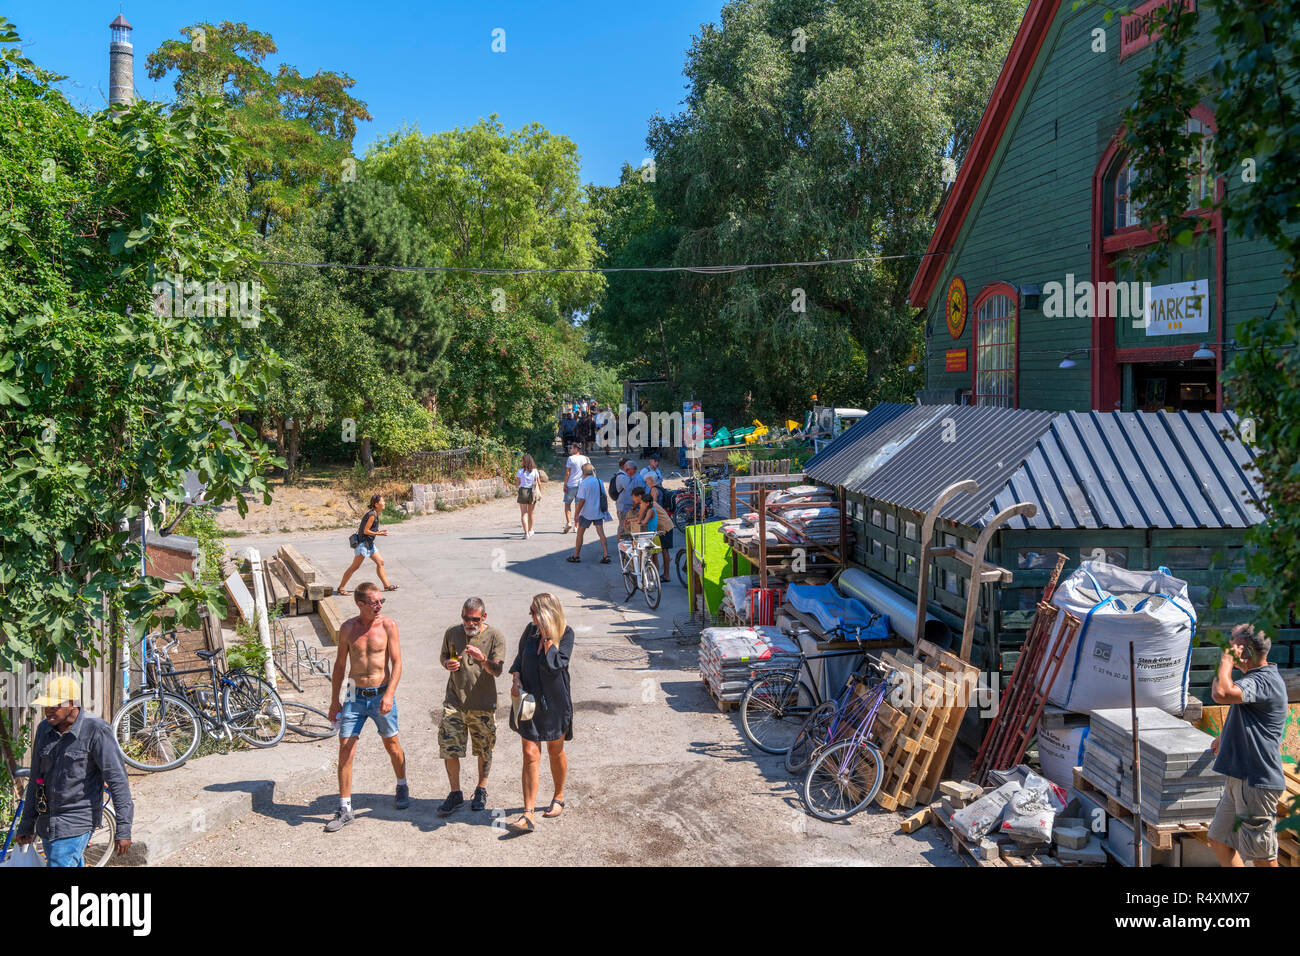 Freetown Christiania, a commune in Christianshavn, Copenhagen, Denmark Stock Photo